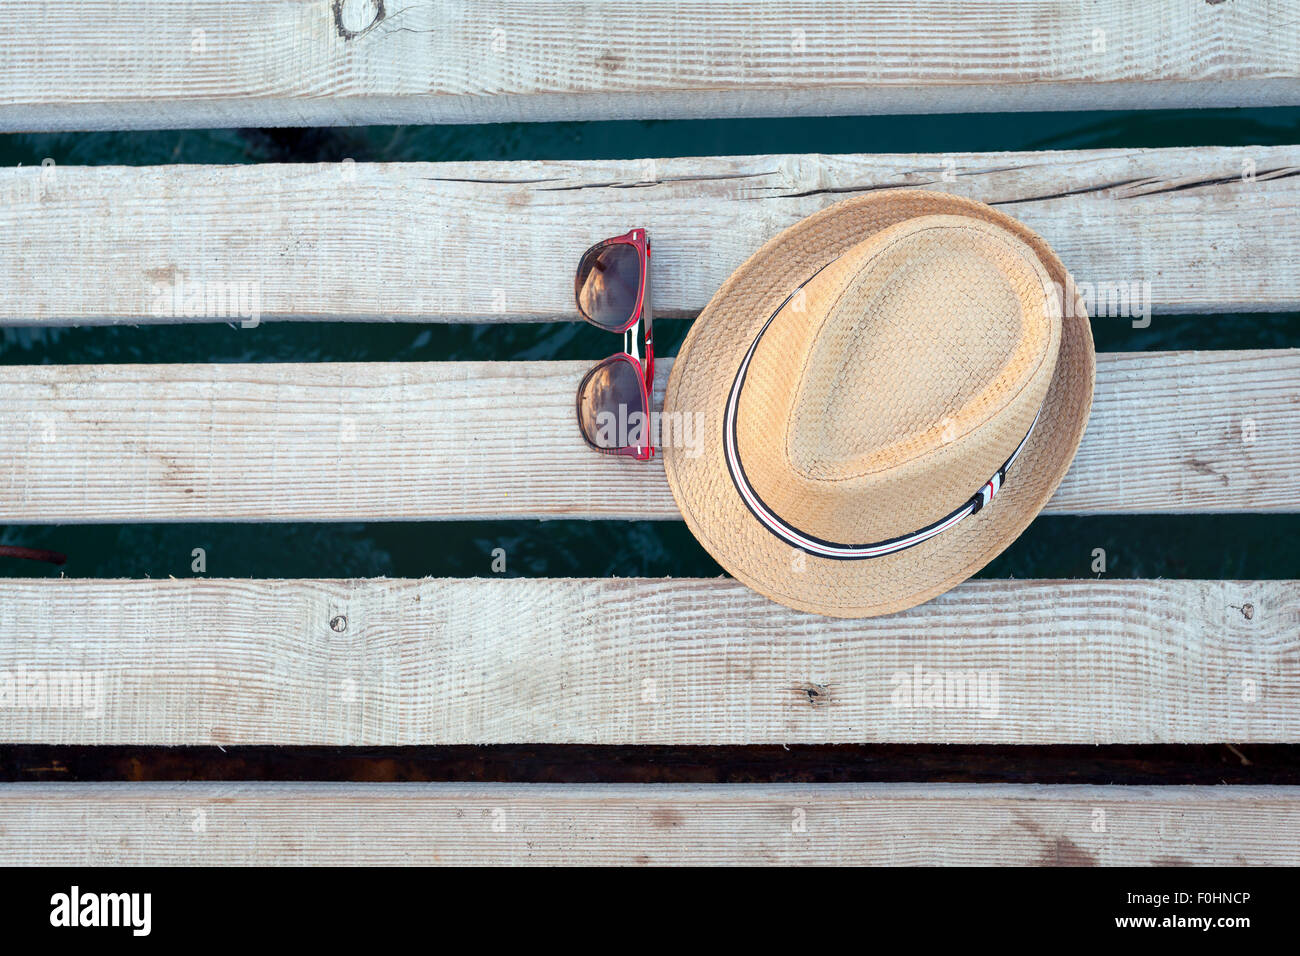 Lunettes de soleil, des tongs et un chapeau sur la texture en bois en été. Banque D'Images